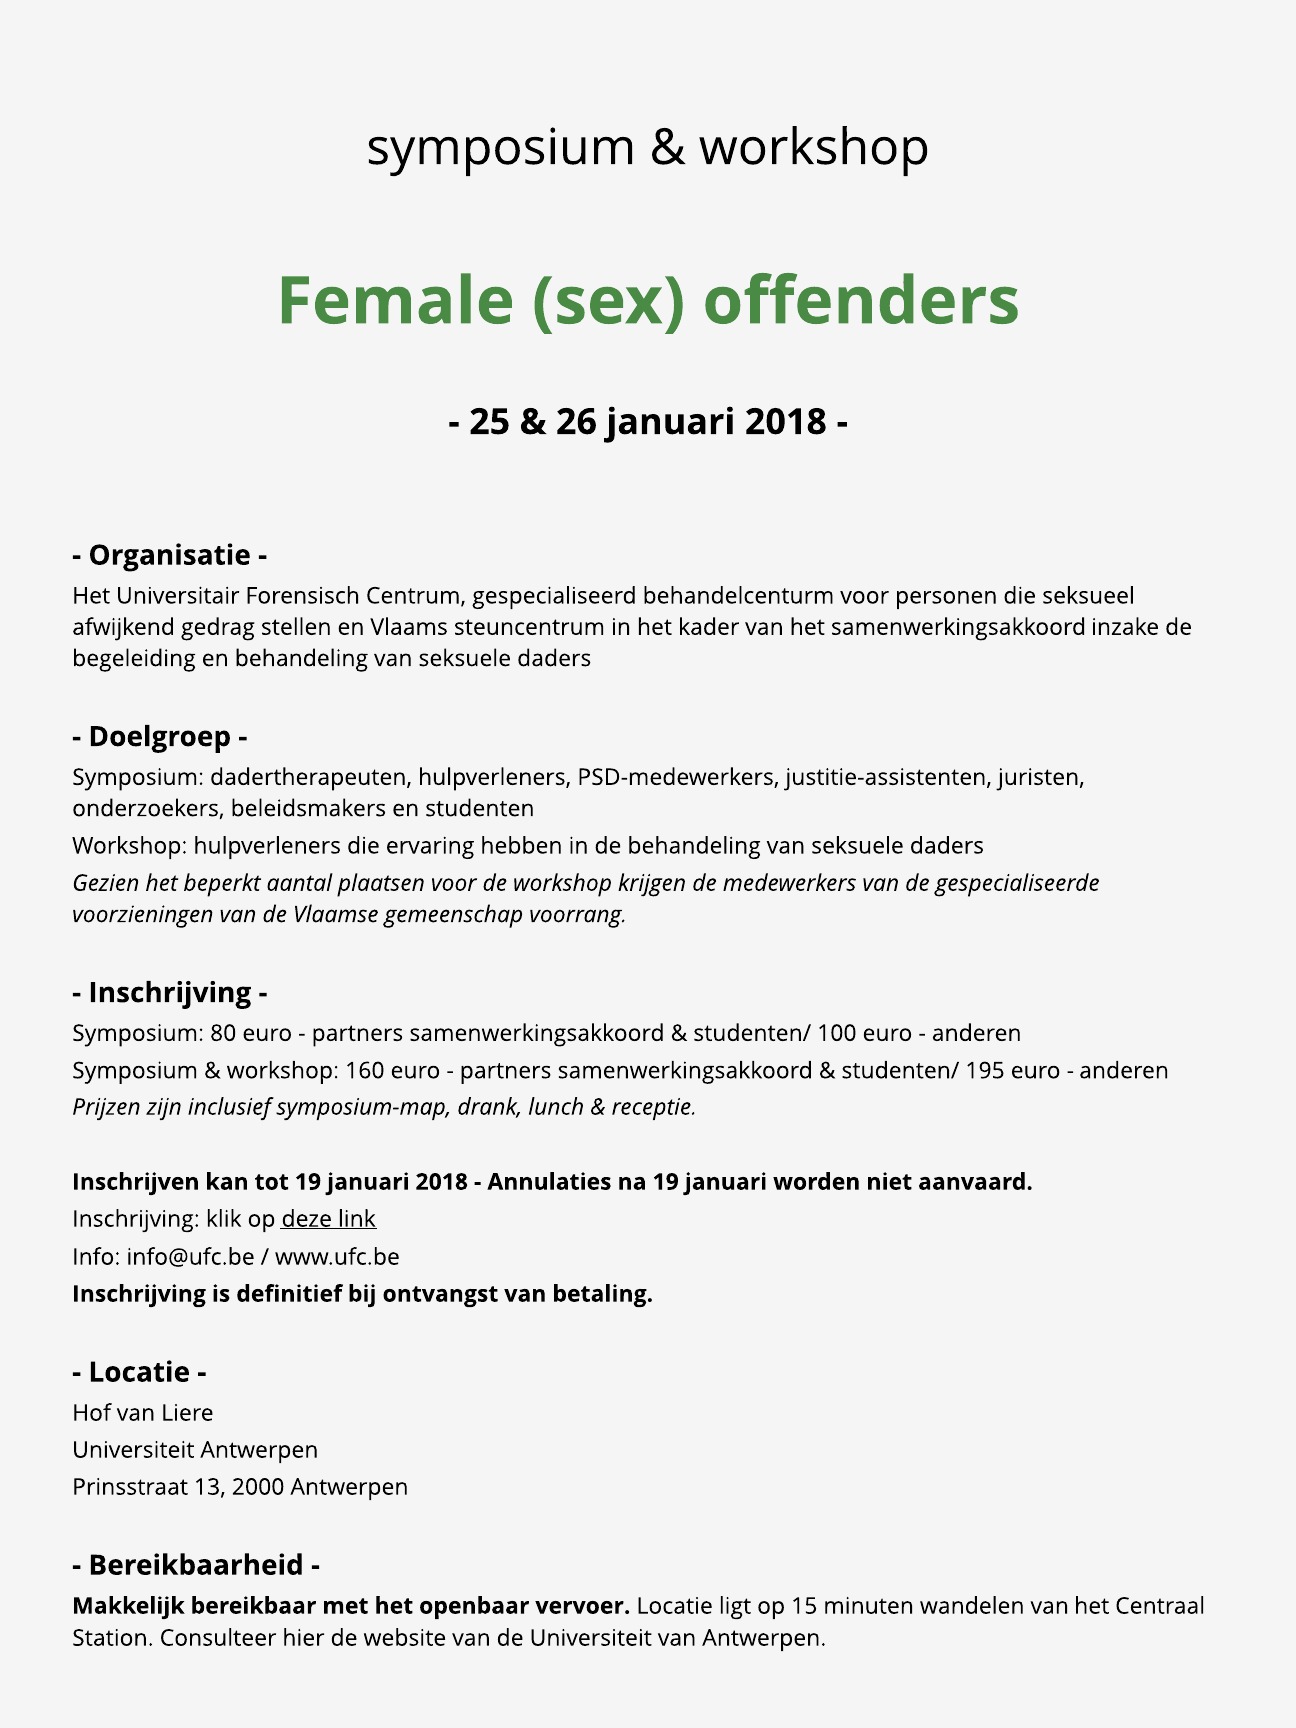 Female sex offenders praktische info